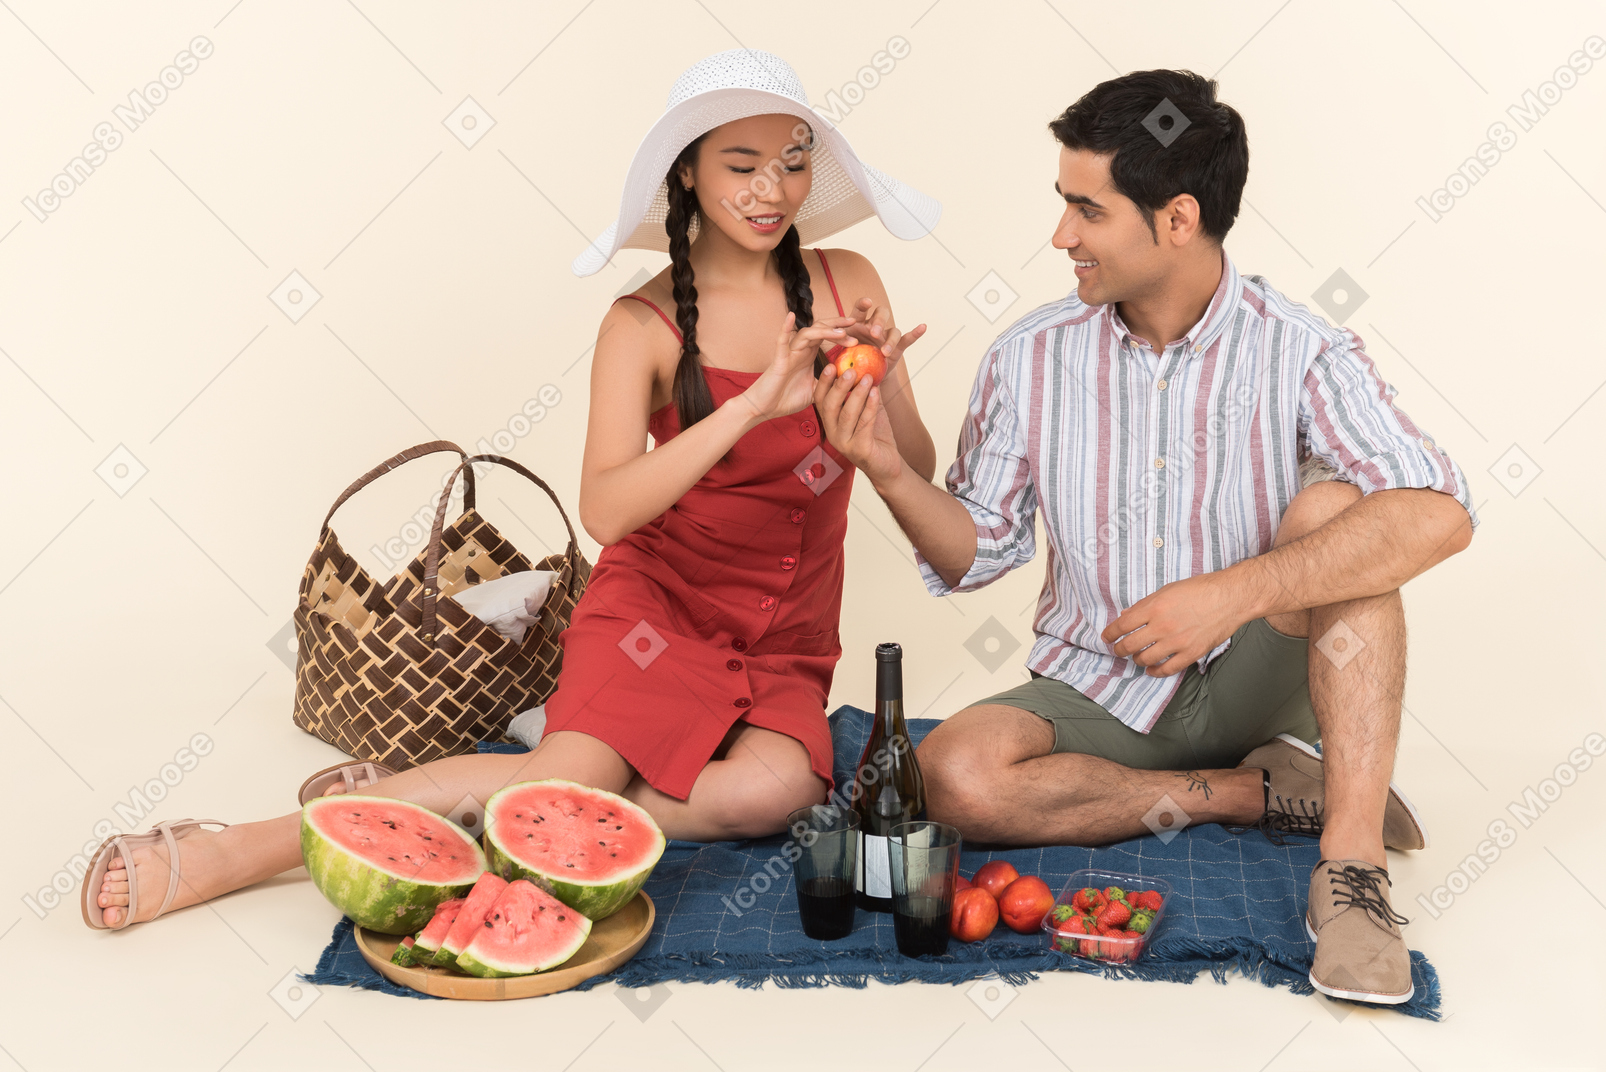 Jeune homme donnant des fruits à une fille pendant qu'ils pique-niquent